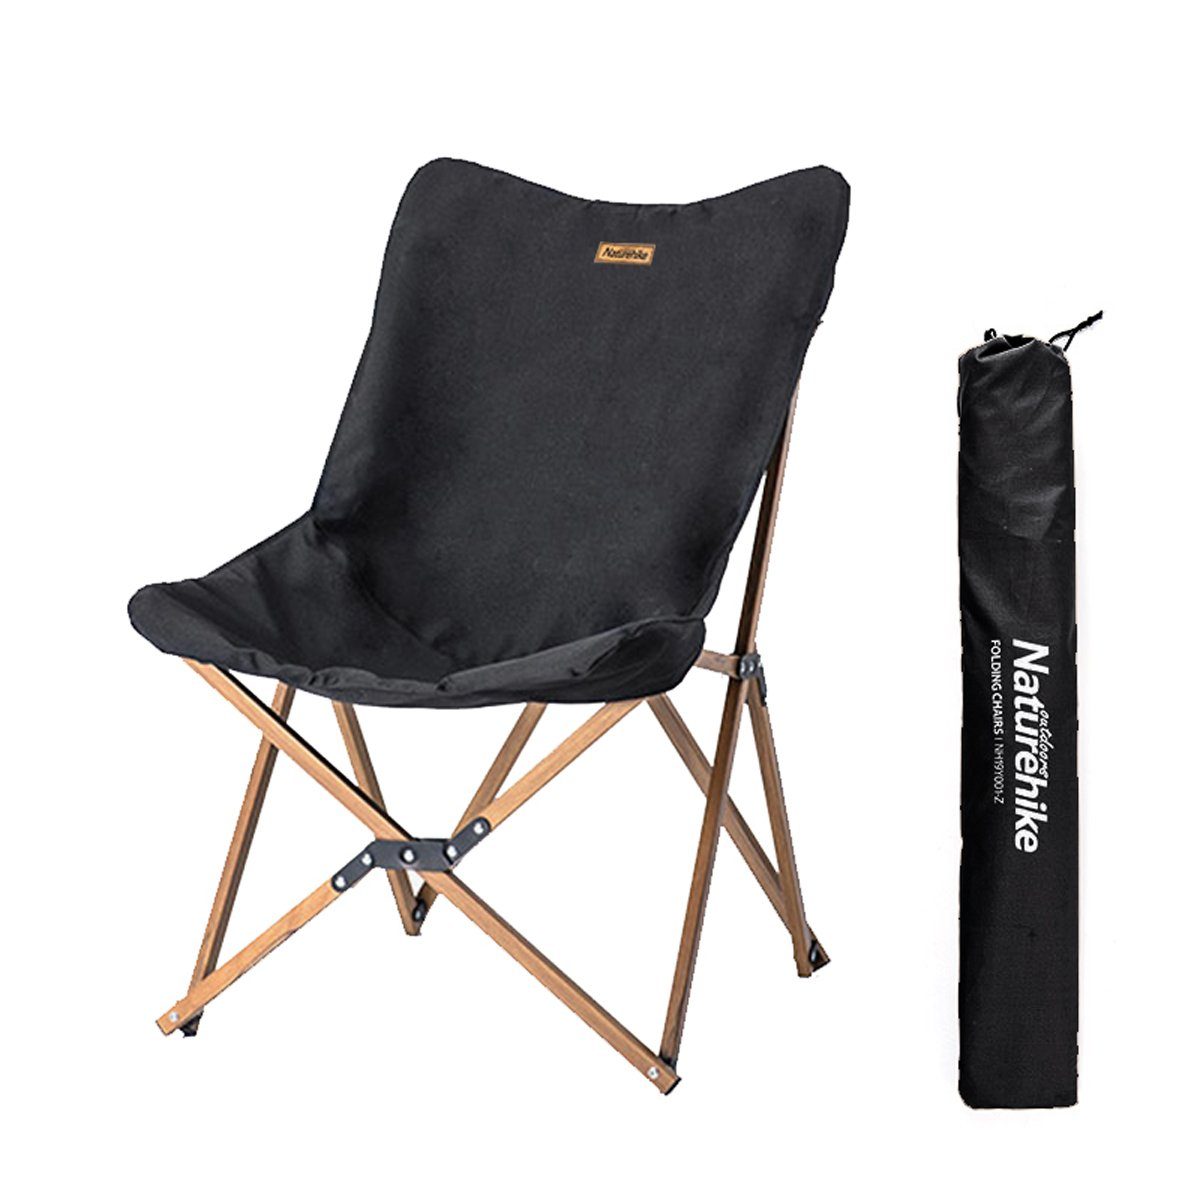 Outdoor Camping Faltbarer Stuhl Tragbar Klappstuhl Chair Picknick Hocker Sitz 